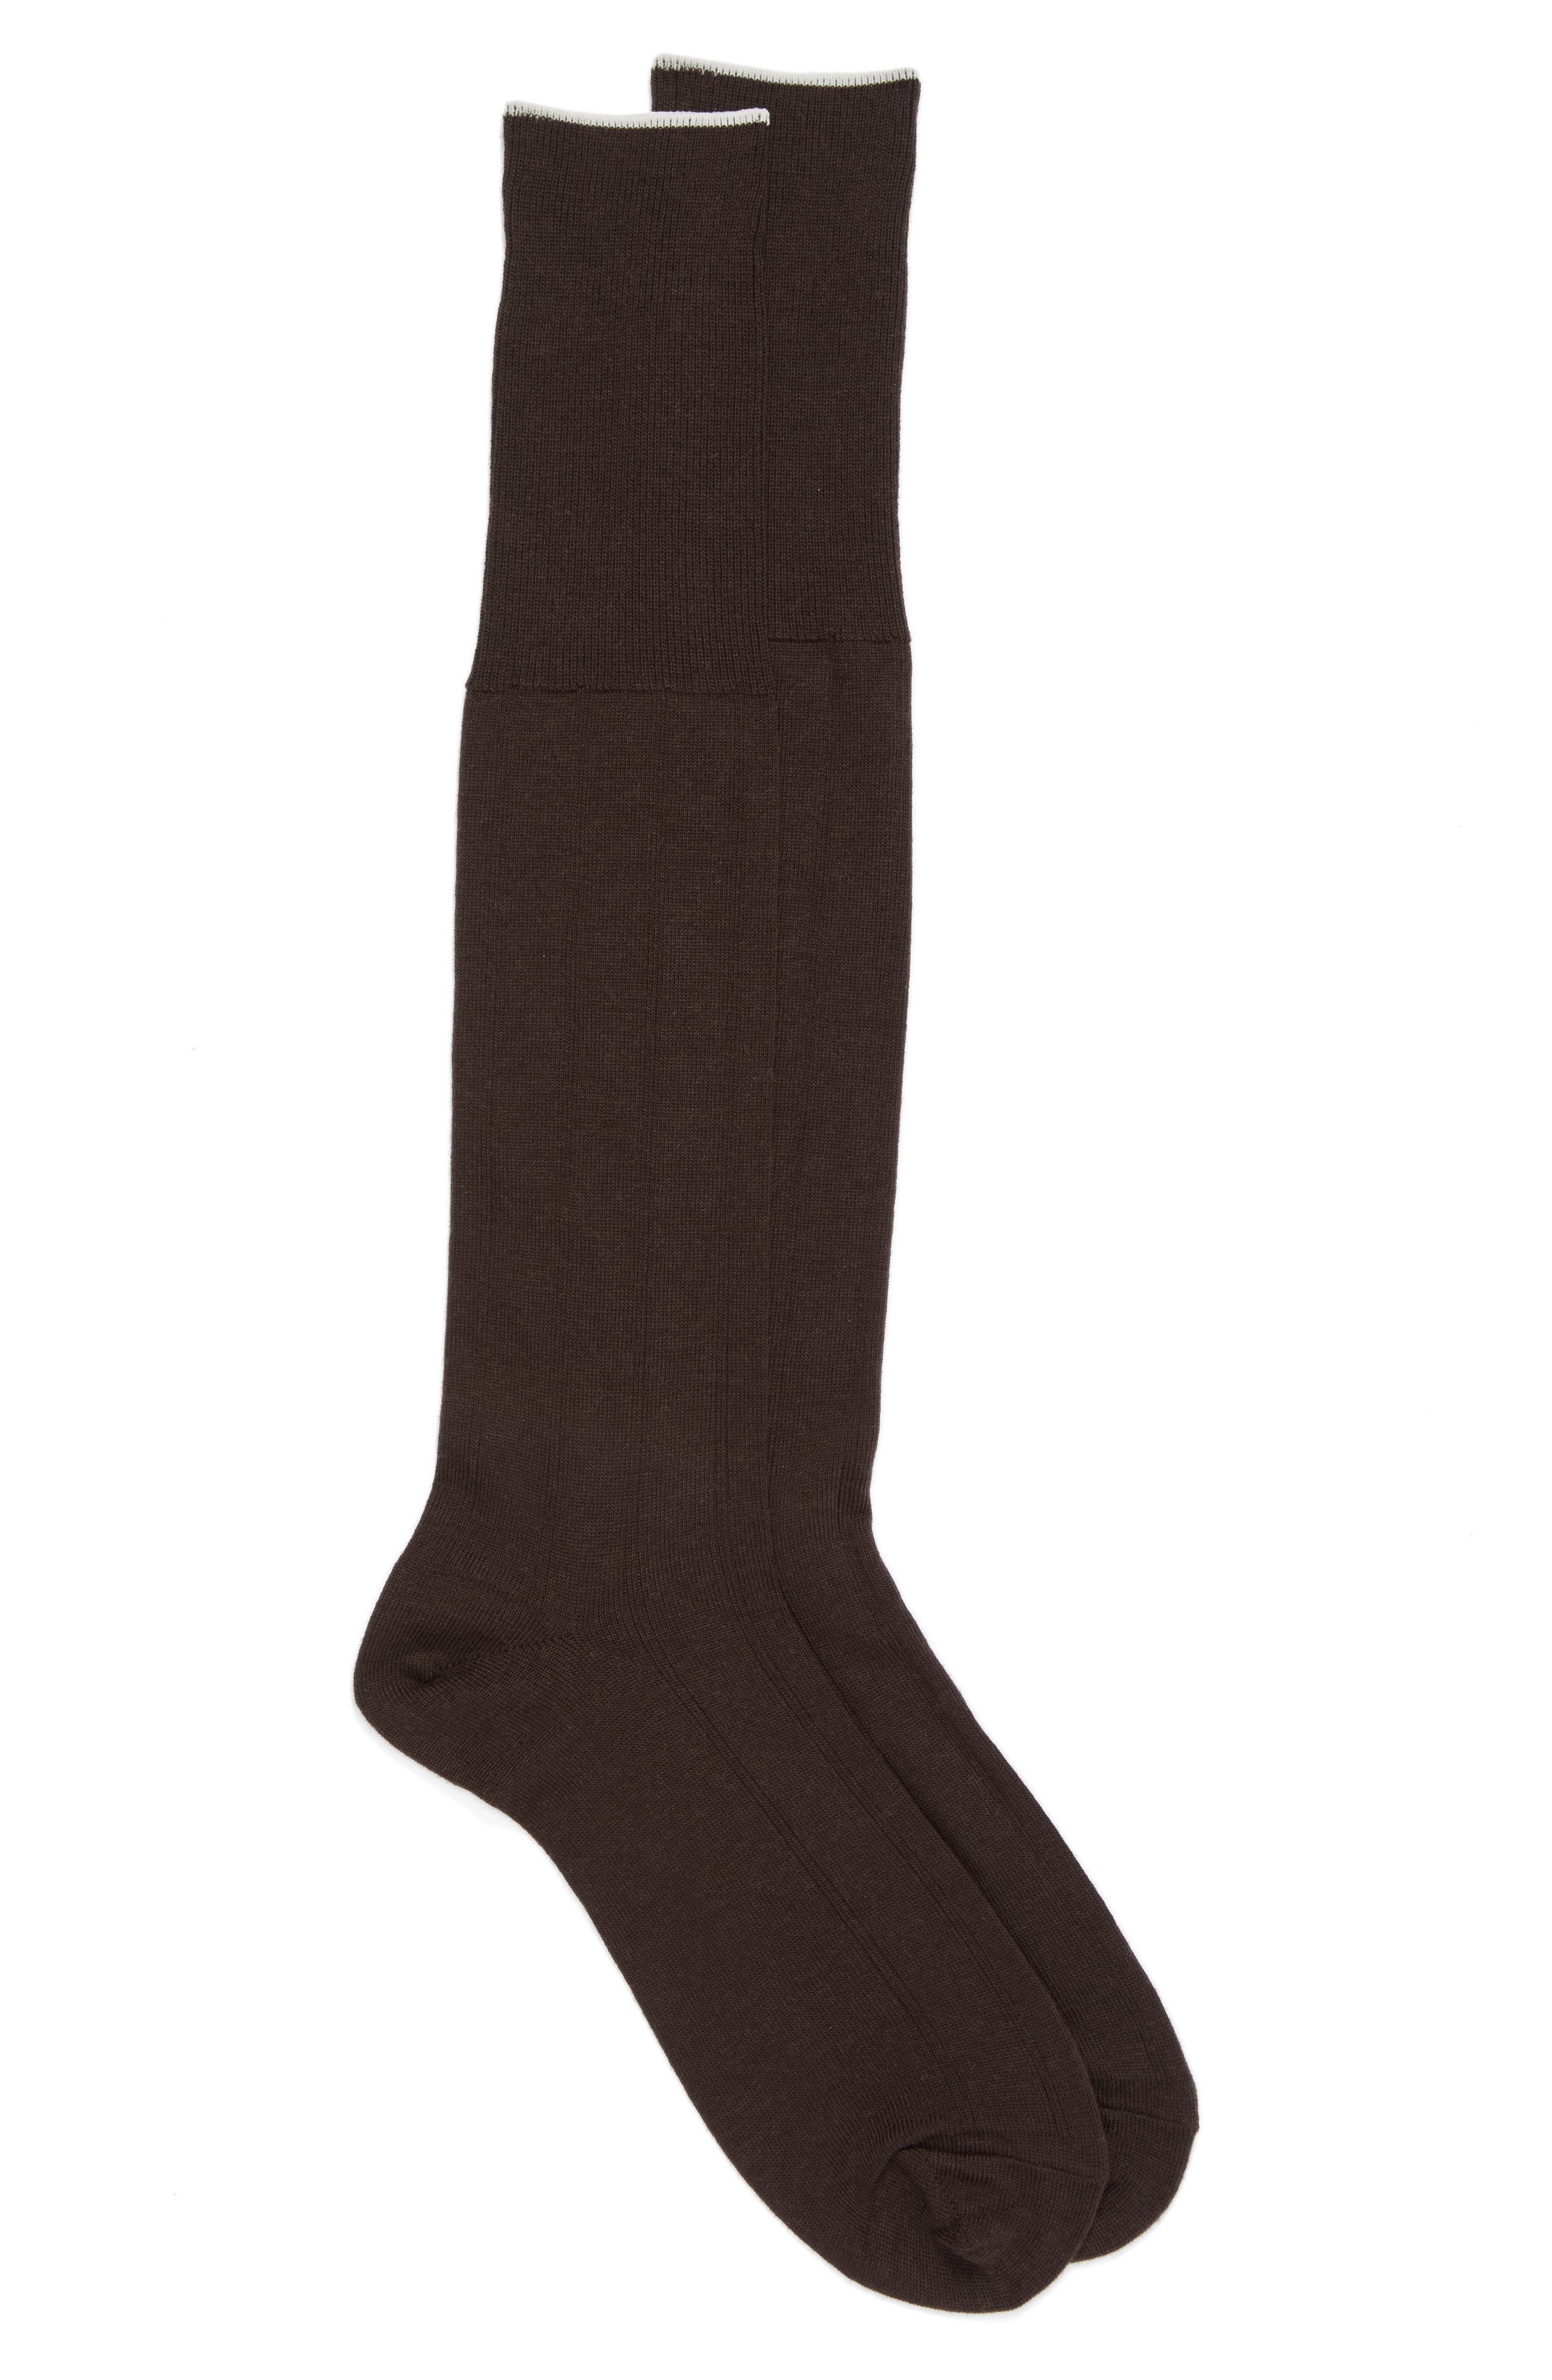 brown socks